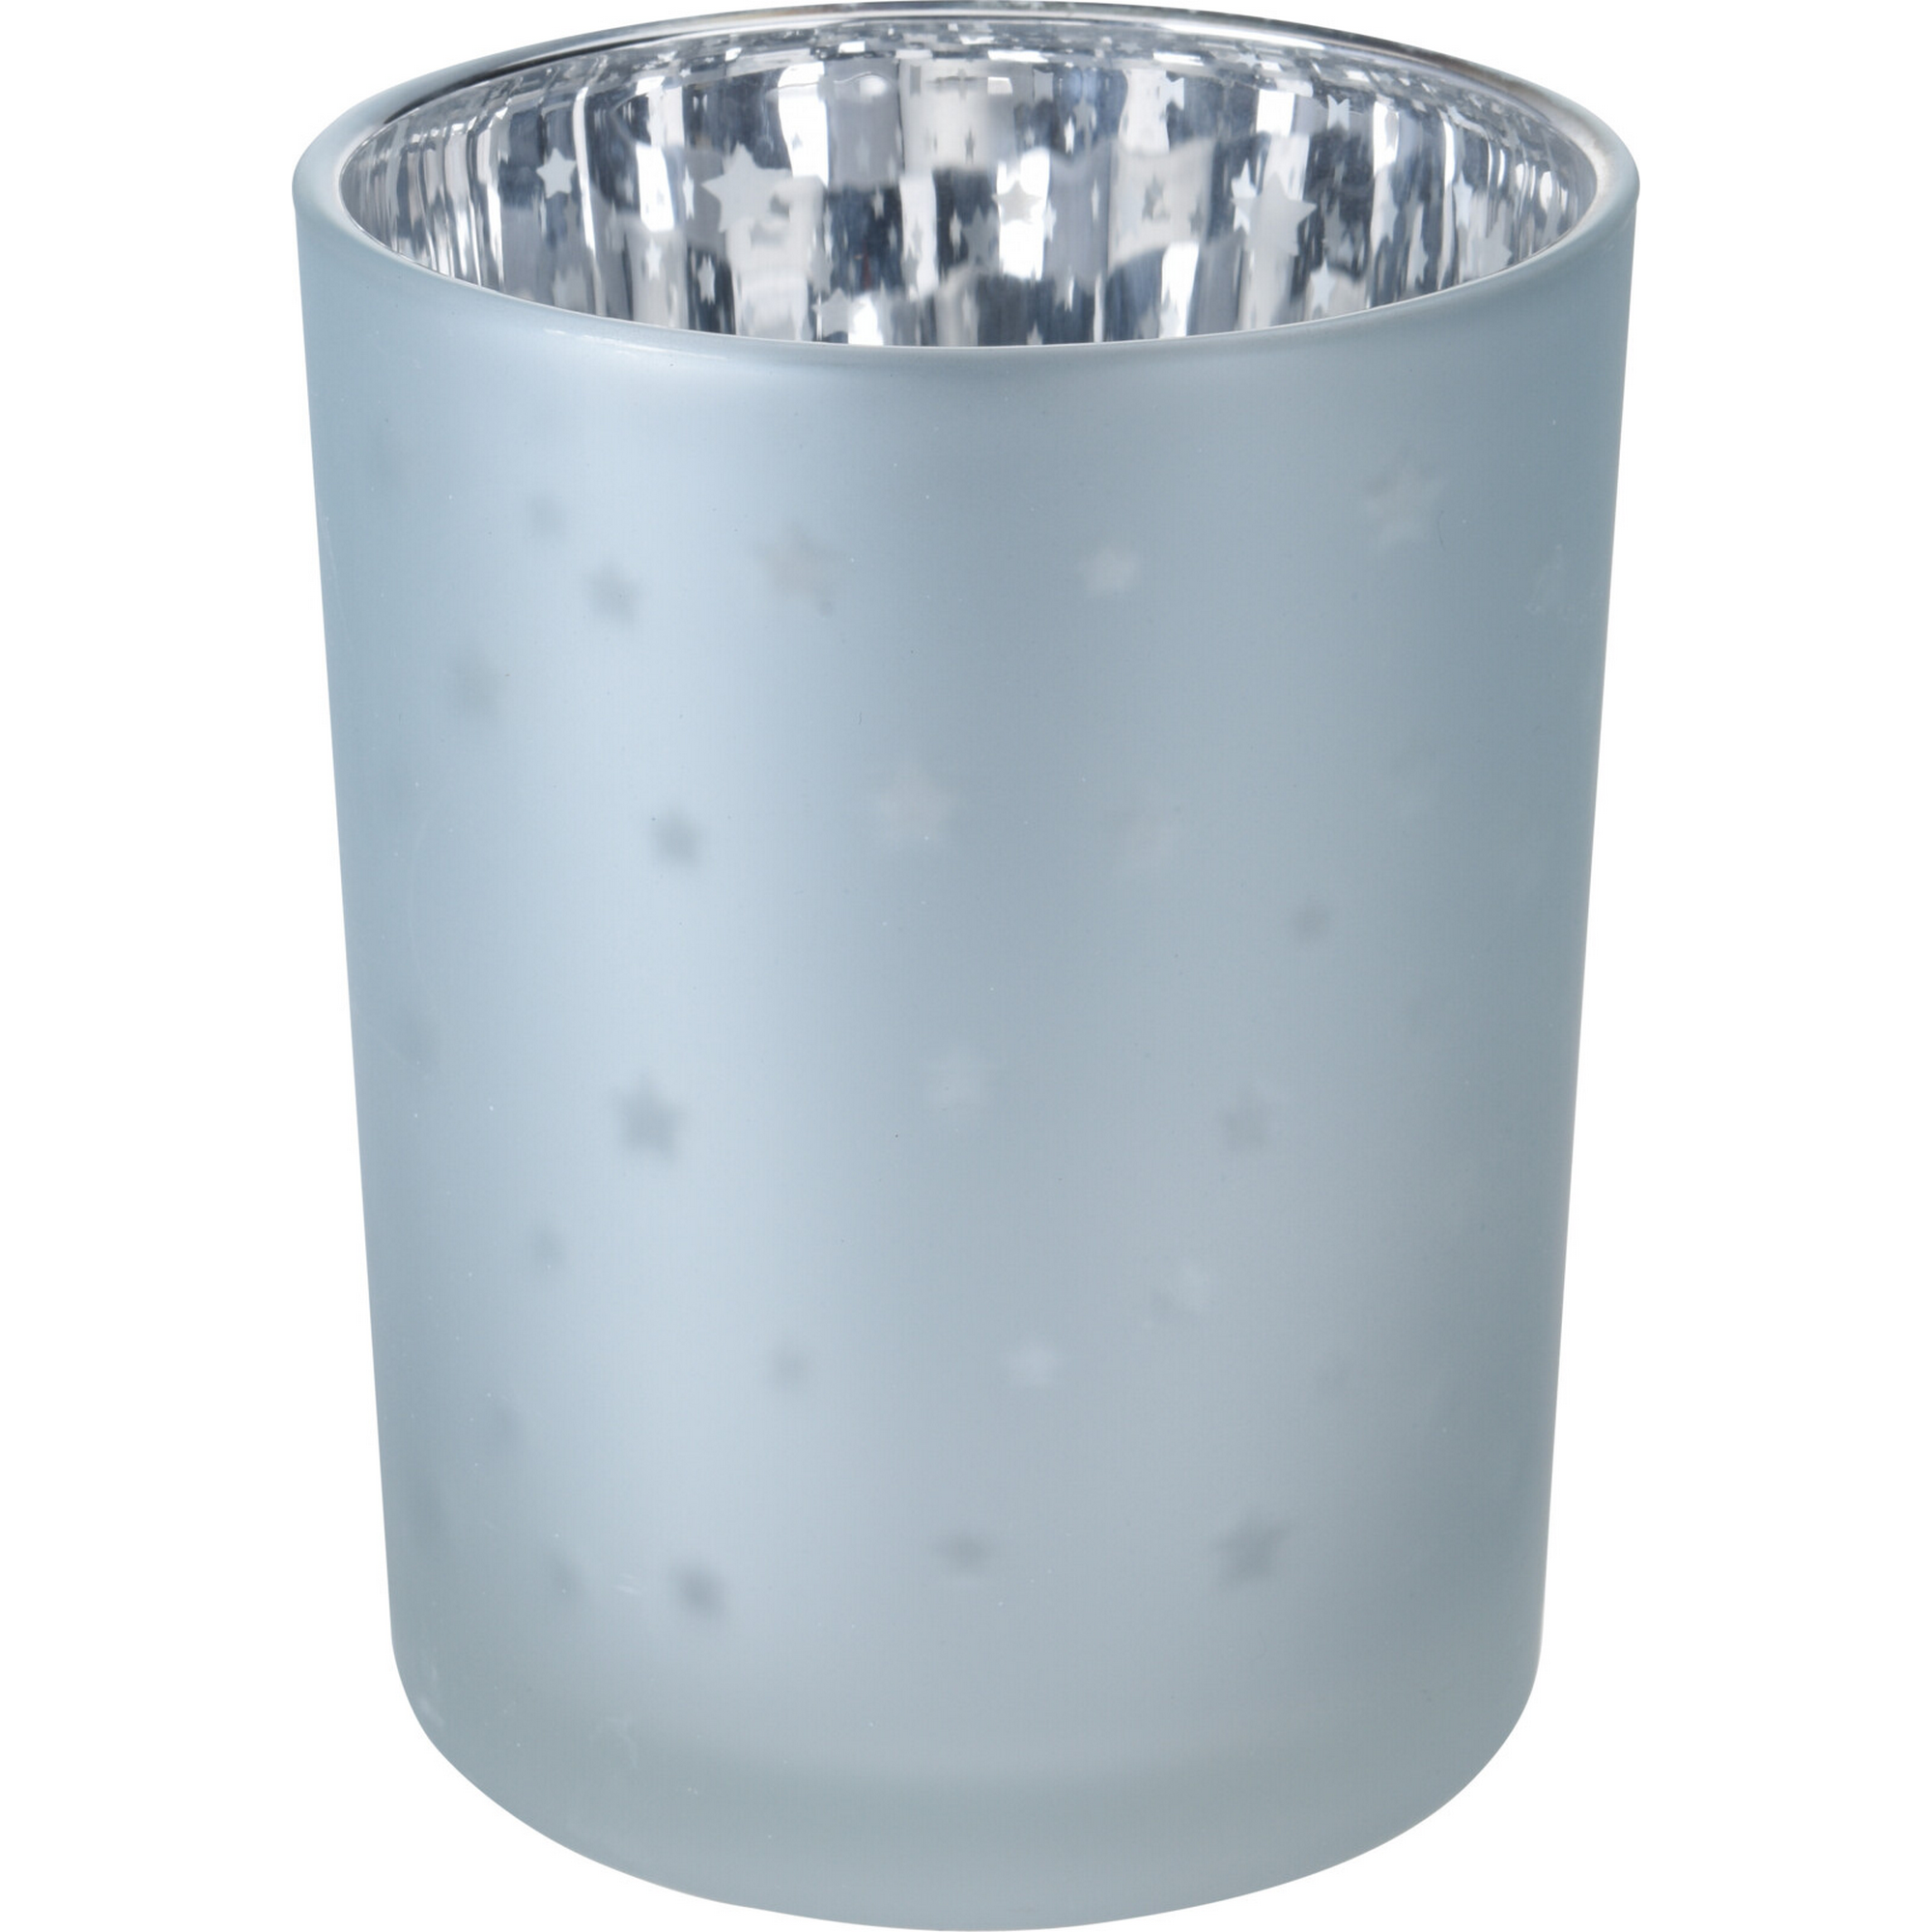 Teelichthalter braun/weiß/hellblau 12 cm, 3 Farben sortiert + product picture